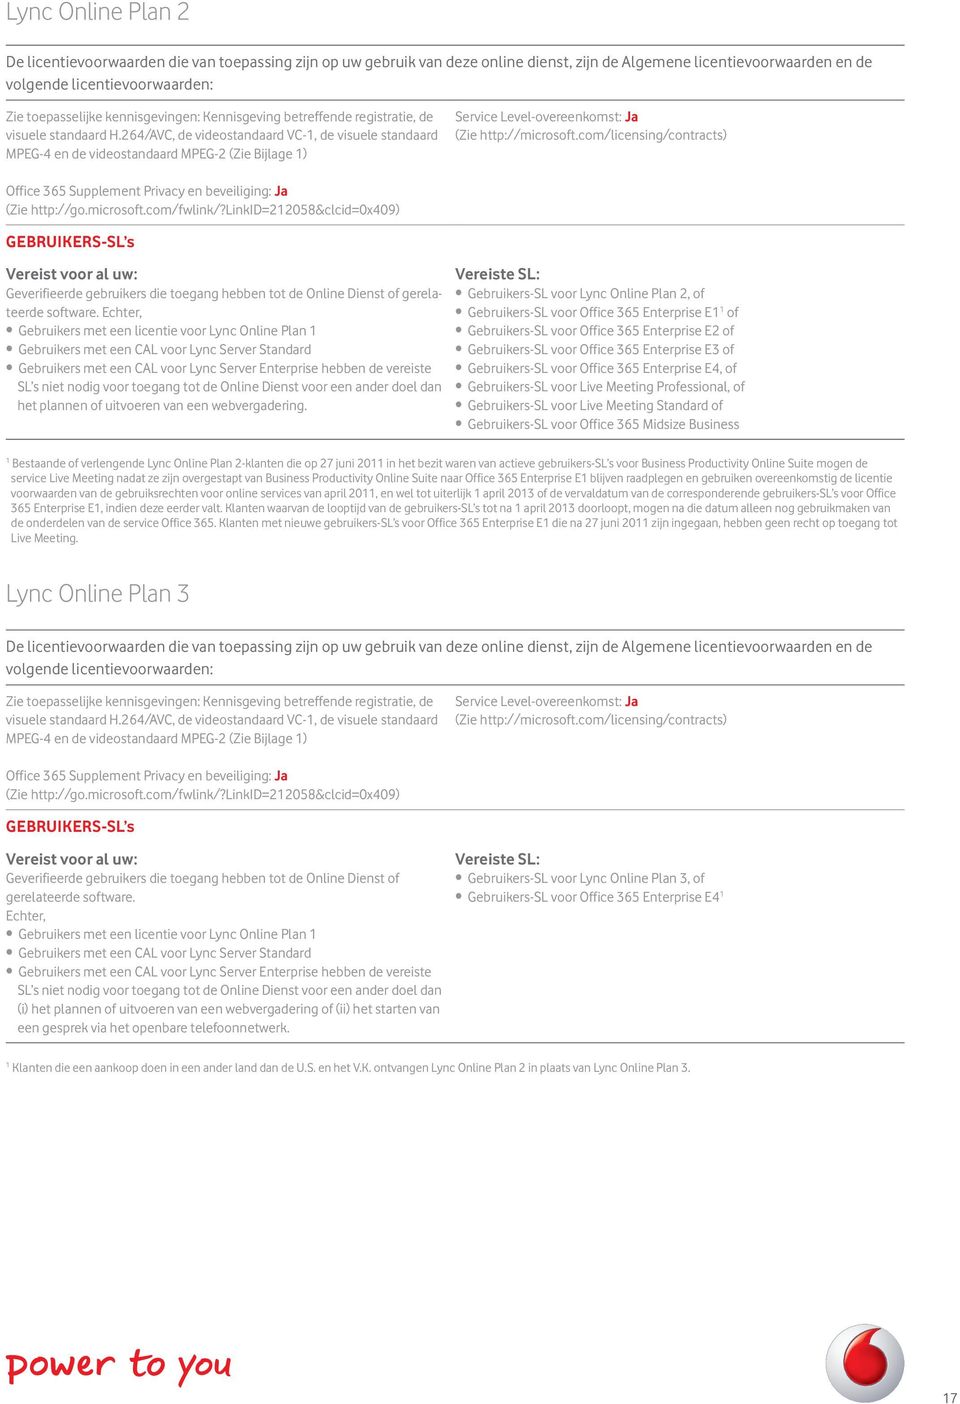 com/licensing/contracts) Office 365 Supplement Privacy en beveiliging: Ja (Zie http://go.microsoft.com/fwlink/?